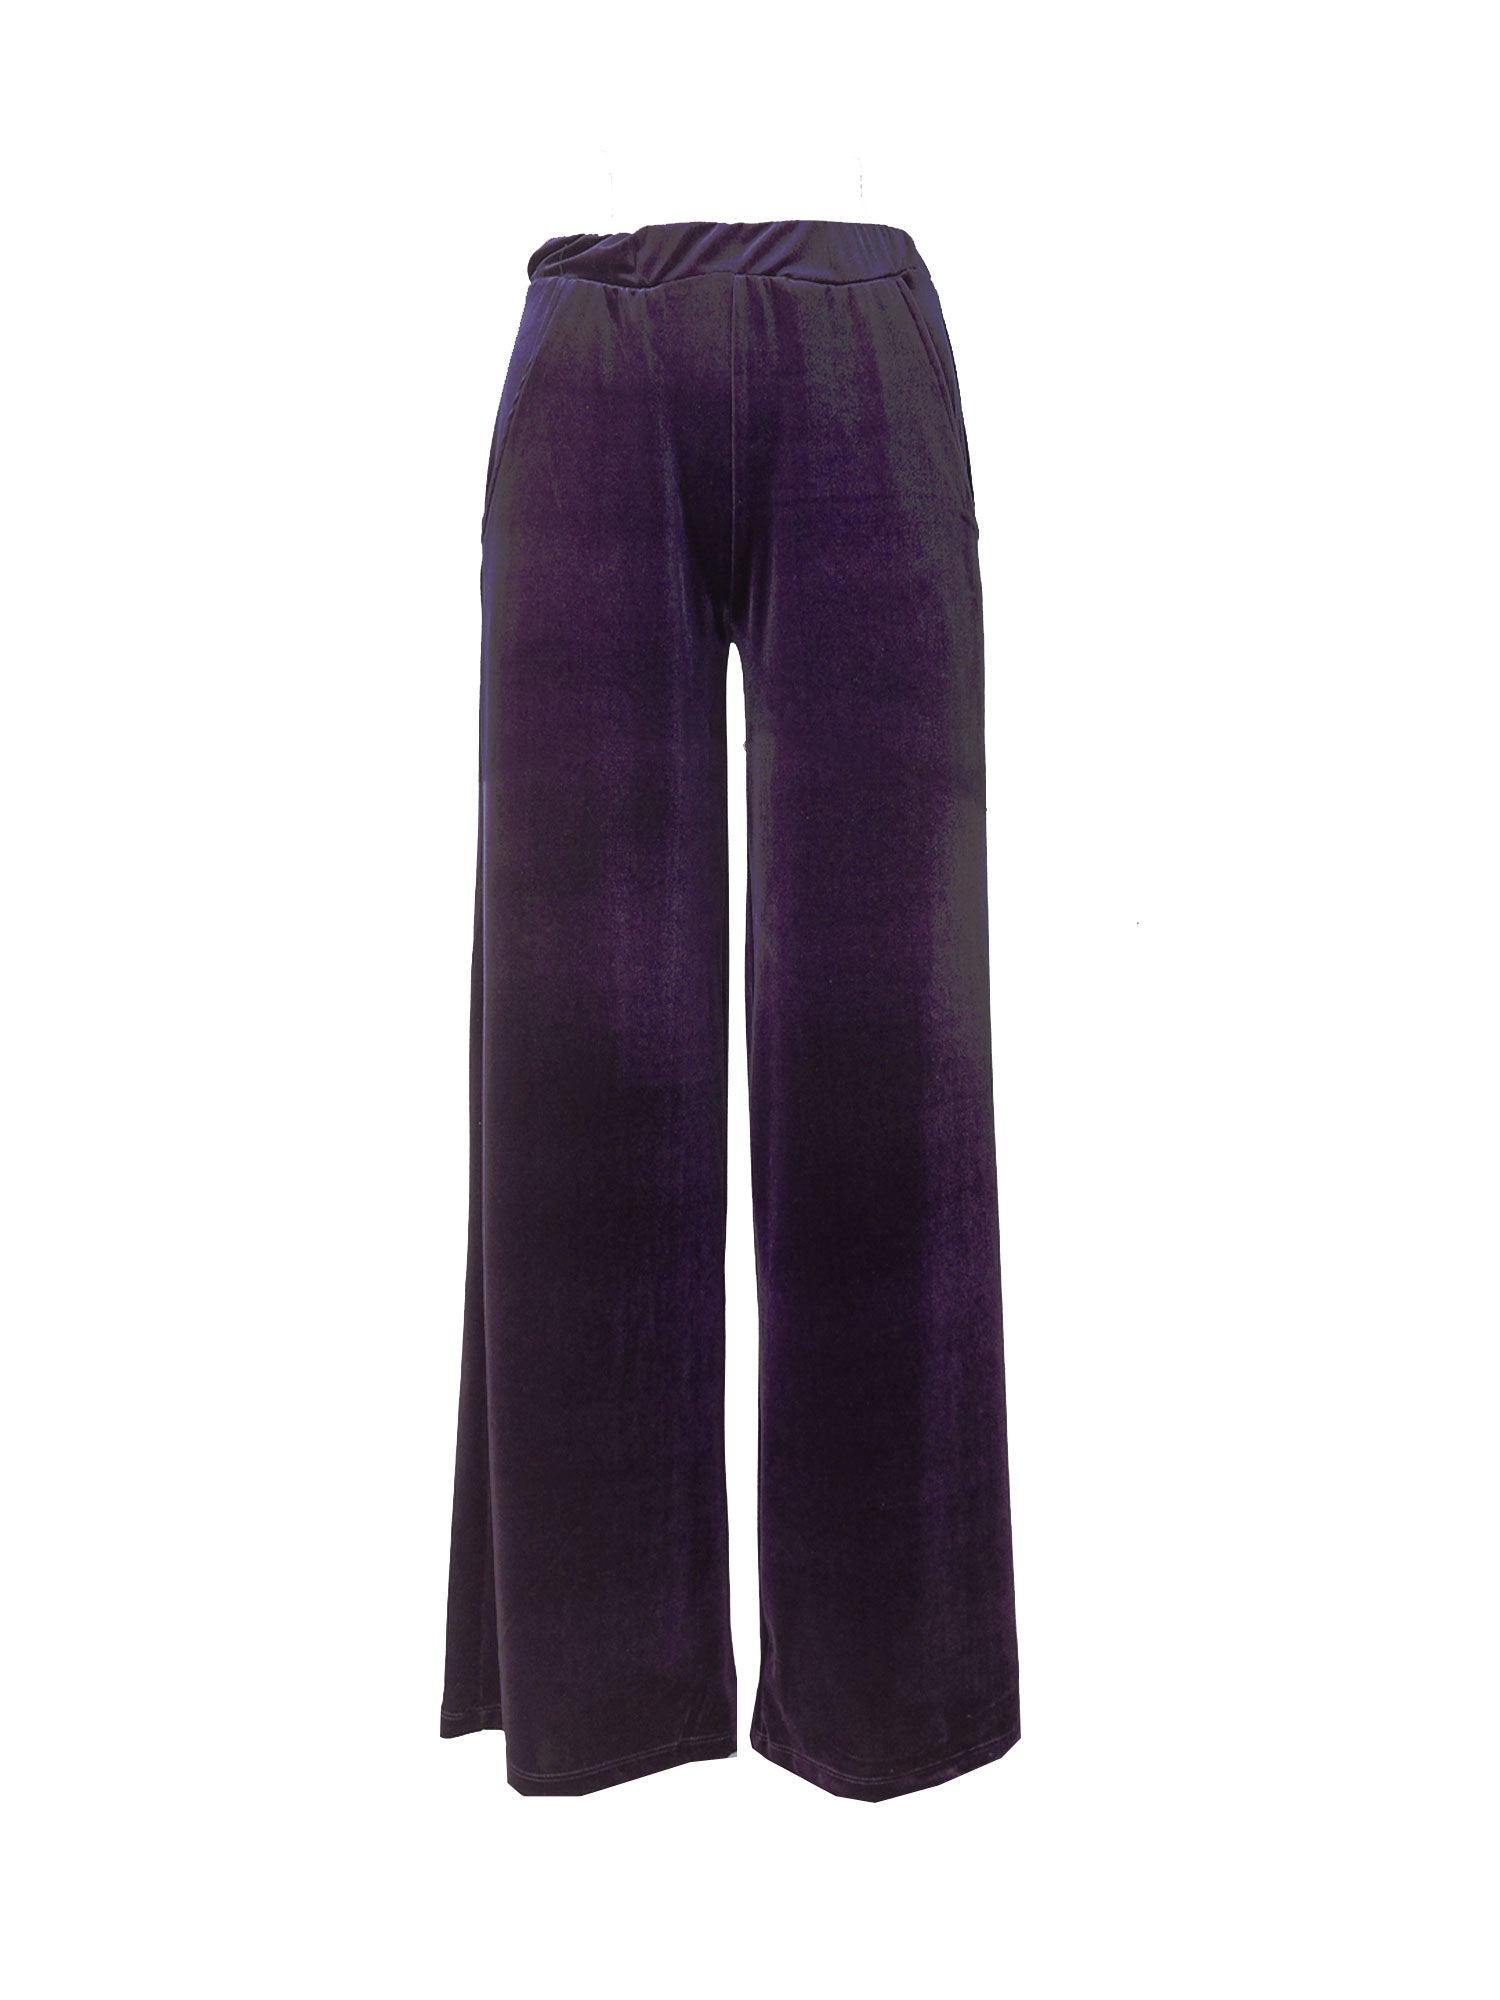 MAXIE - wide-leg chenille trousers in purple